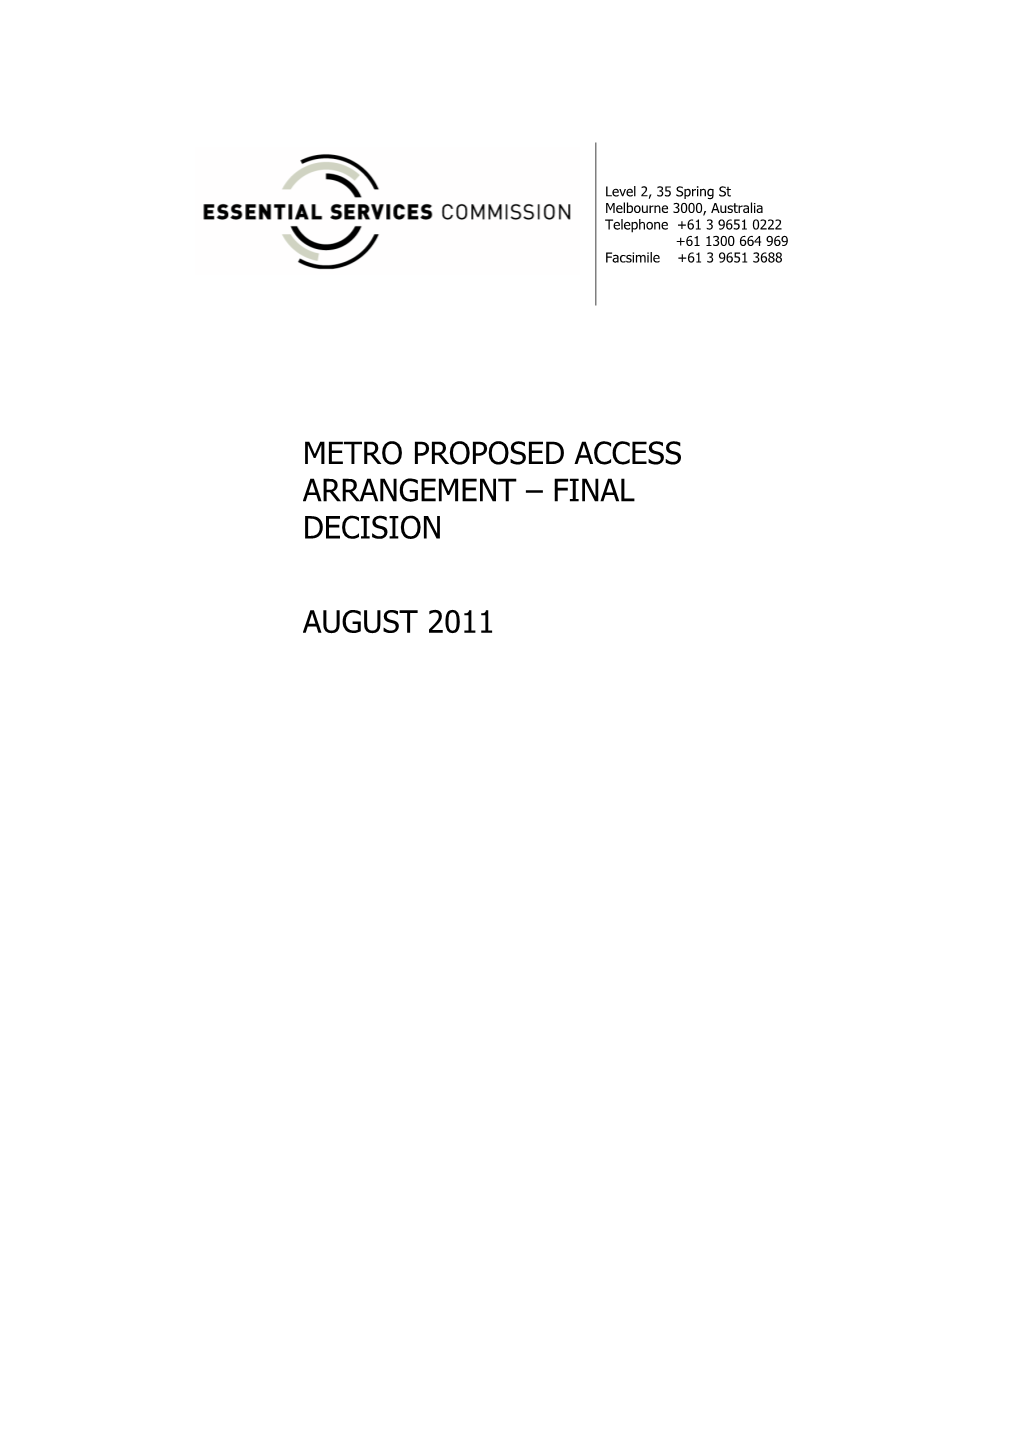 Metro Proposed Access Arrangement – Final Decision